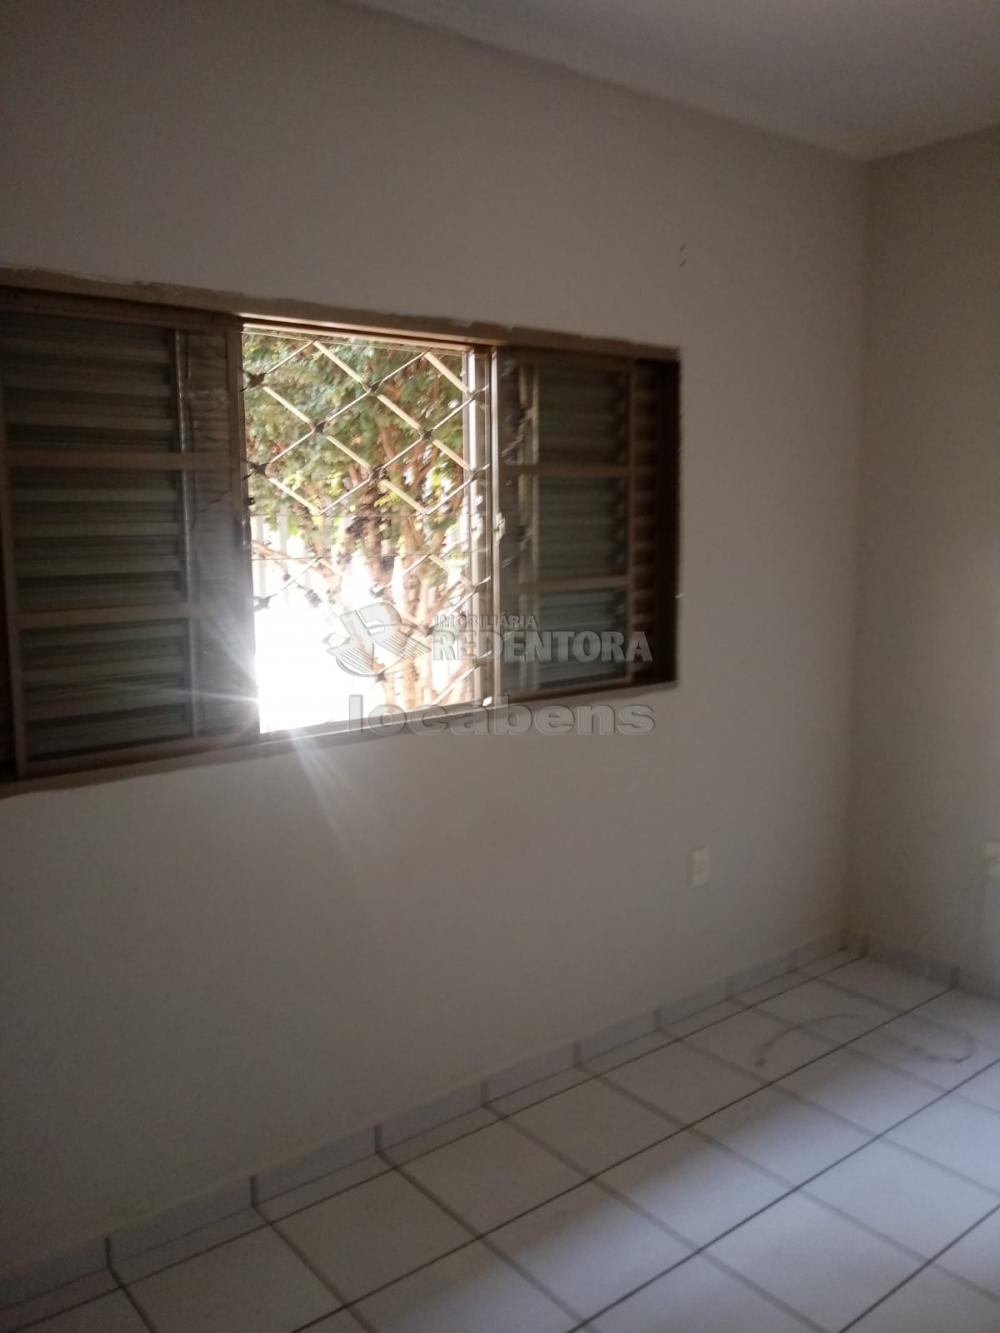 Comprar Casa / Padrão em São José do Rio Preto R$ 320.000,00 - Foto 8